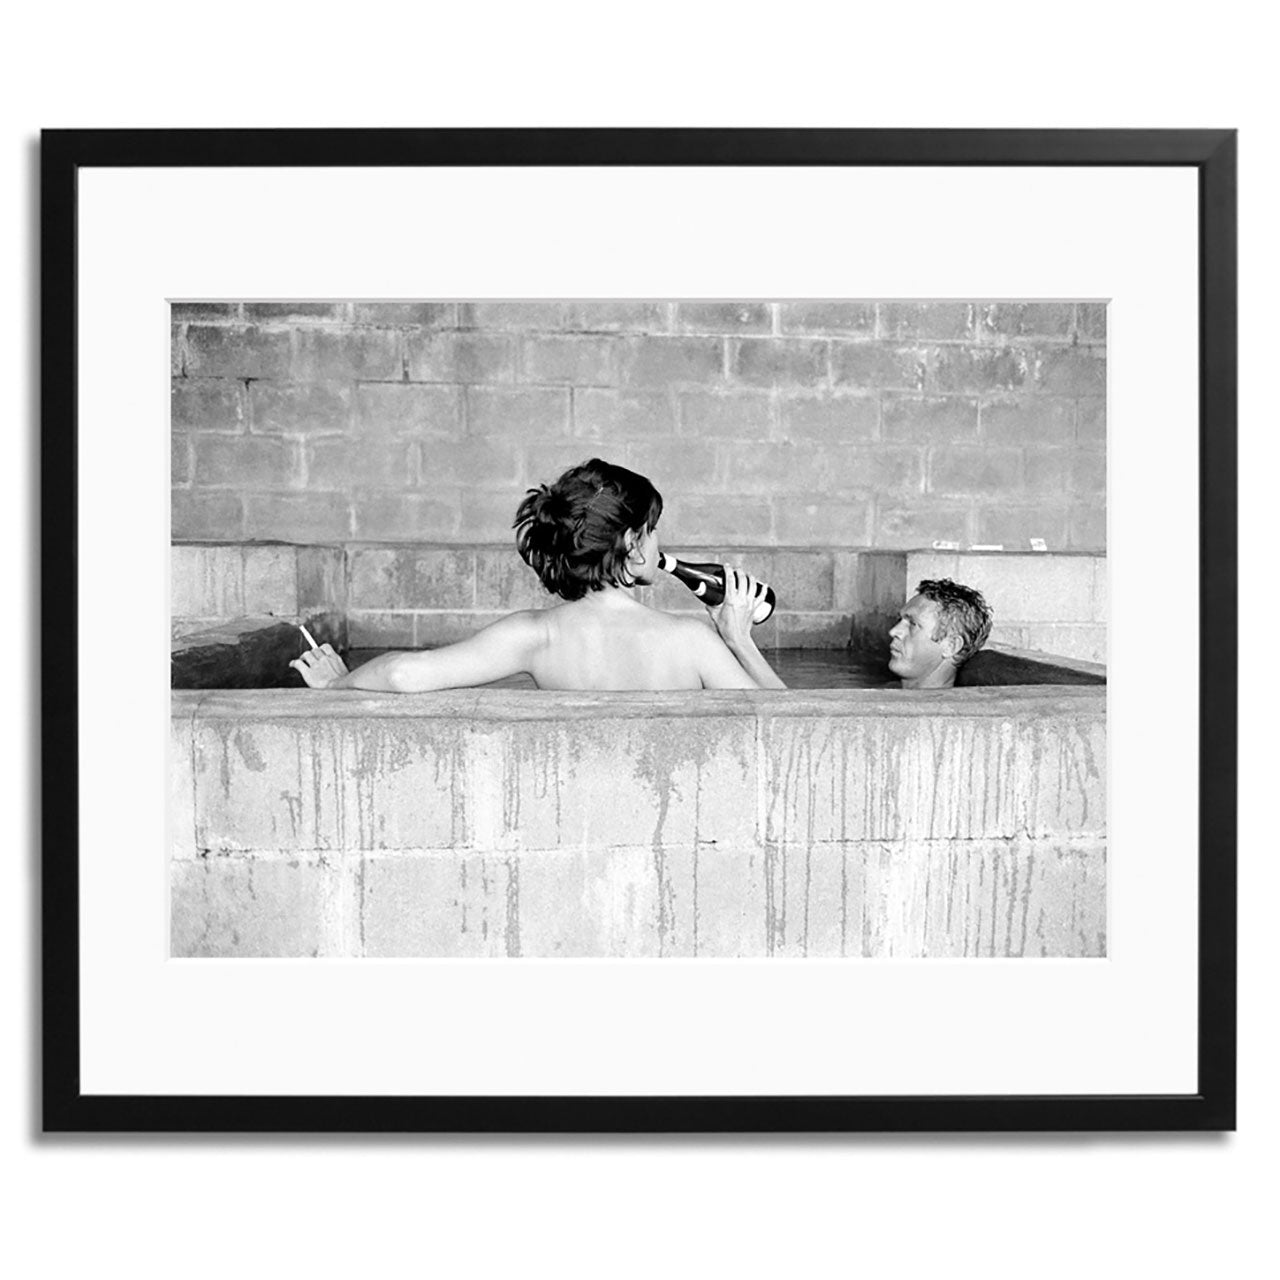 Steve McQueen & Wife Framed Print